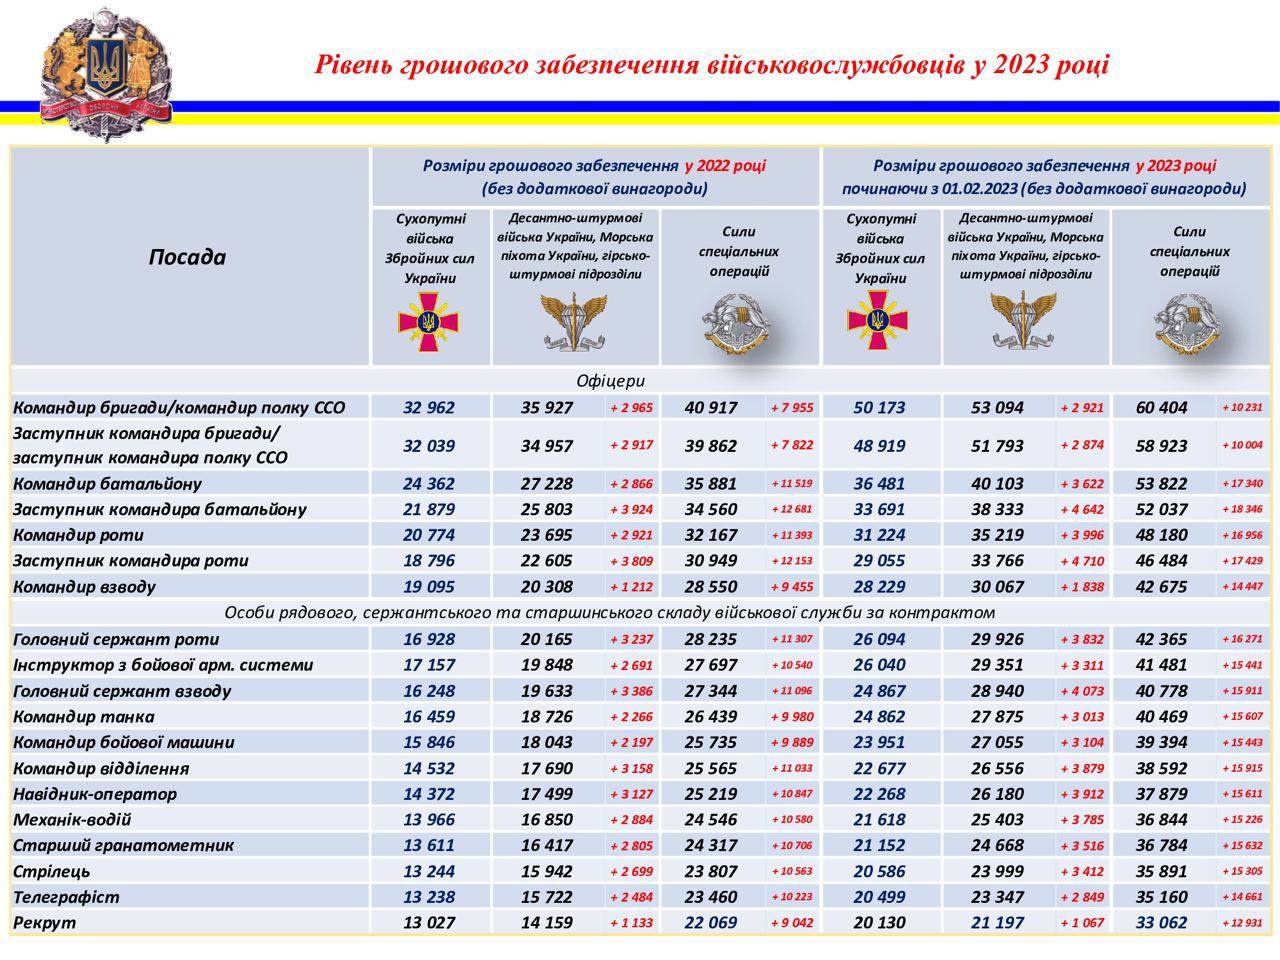 Як змінилися зарплати військових у 2023 році: порівняльна таблиця